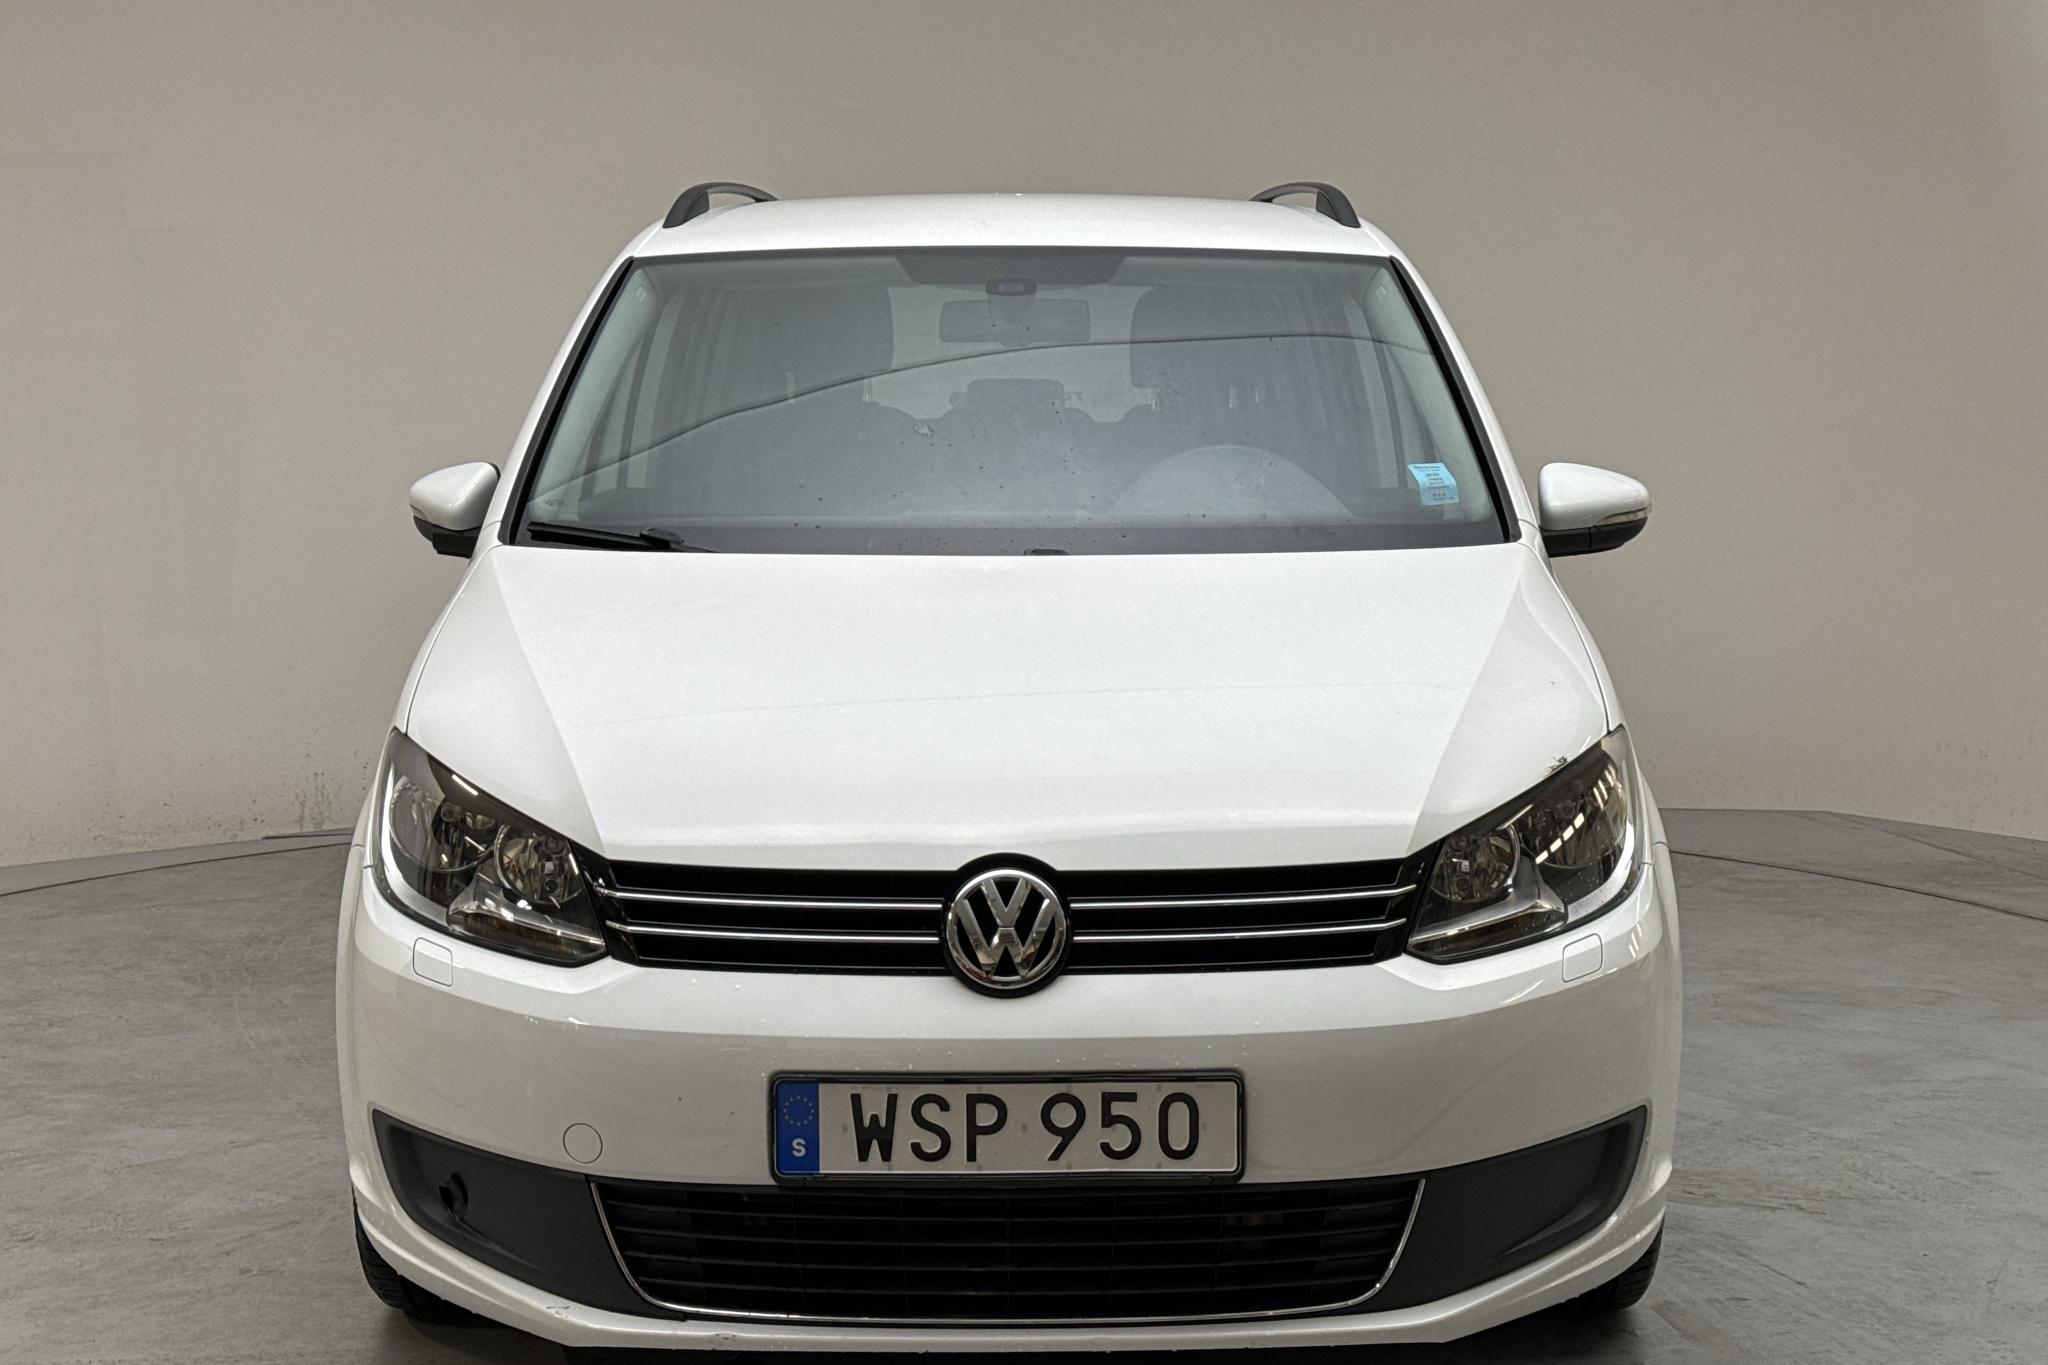 VW Touran 1.4 TGI EcoFuel (150hk) - 7 546 mil - Manuell - vit - 2015